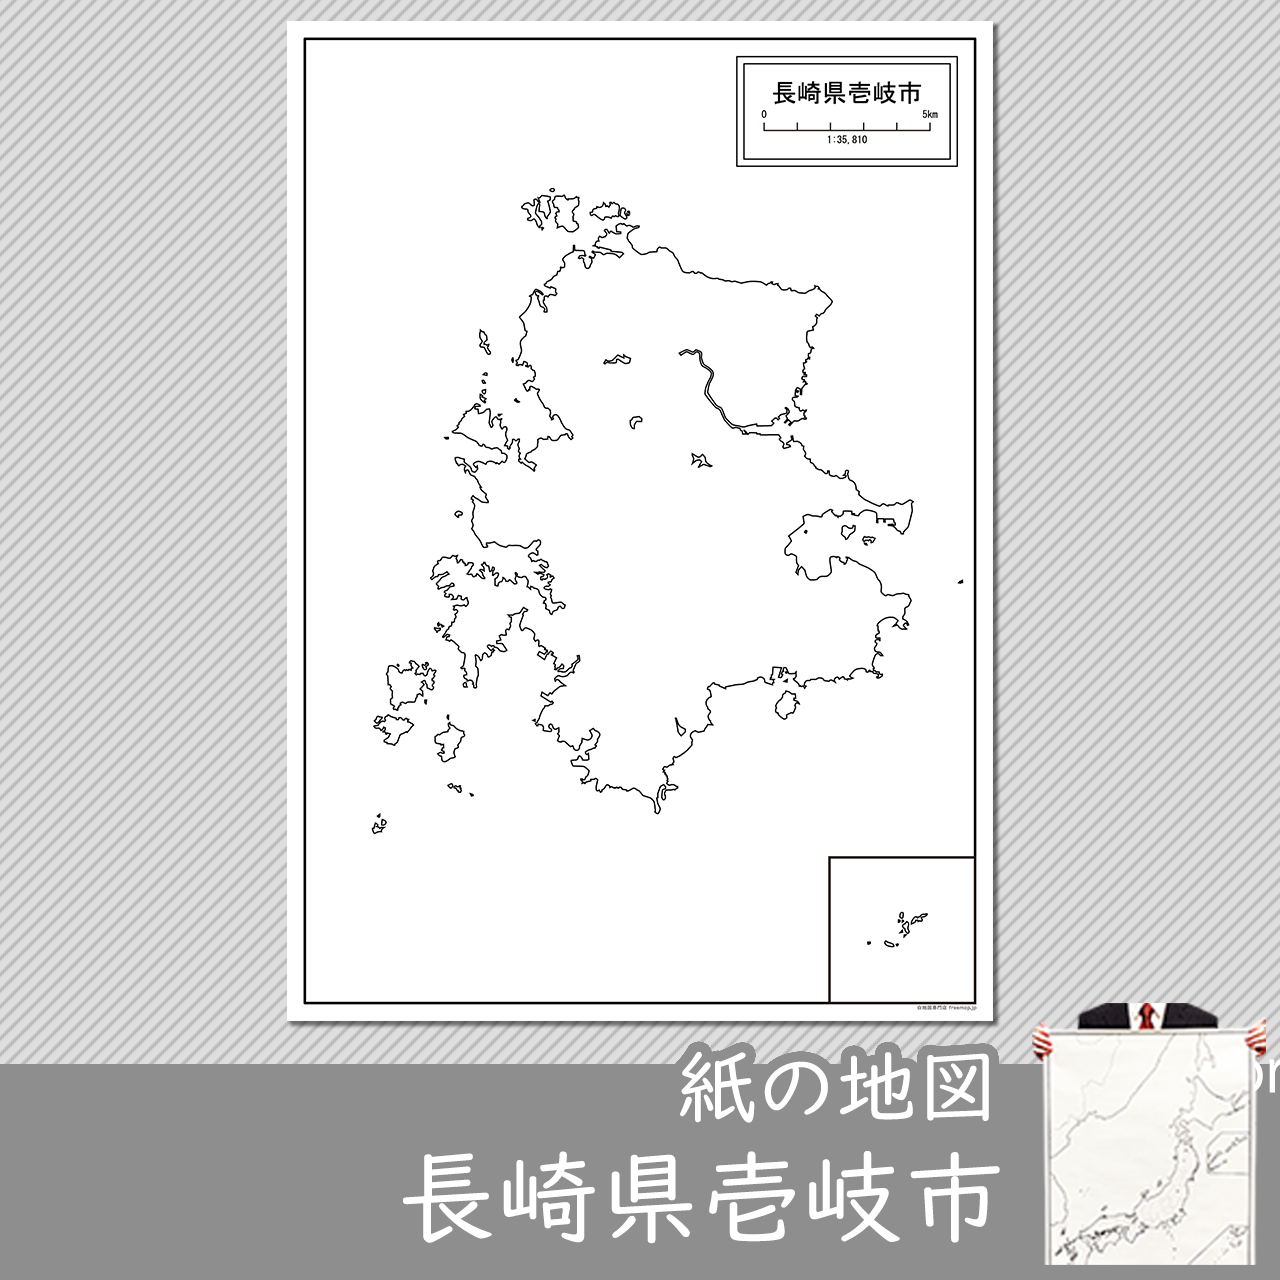 壱岐市の紙の白地図のサムネイル